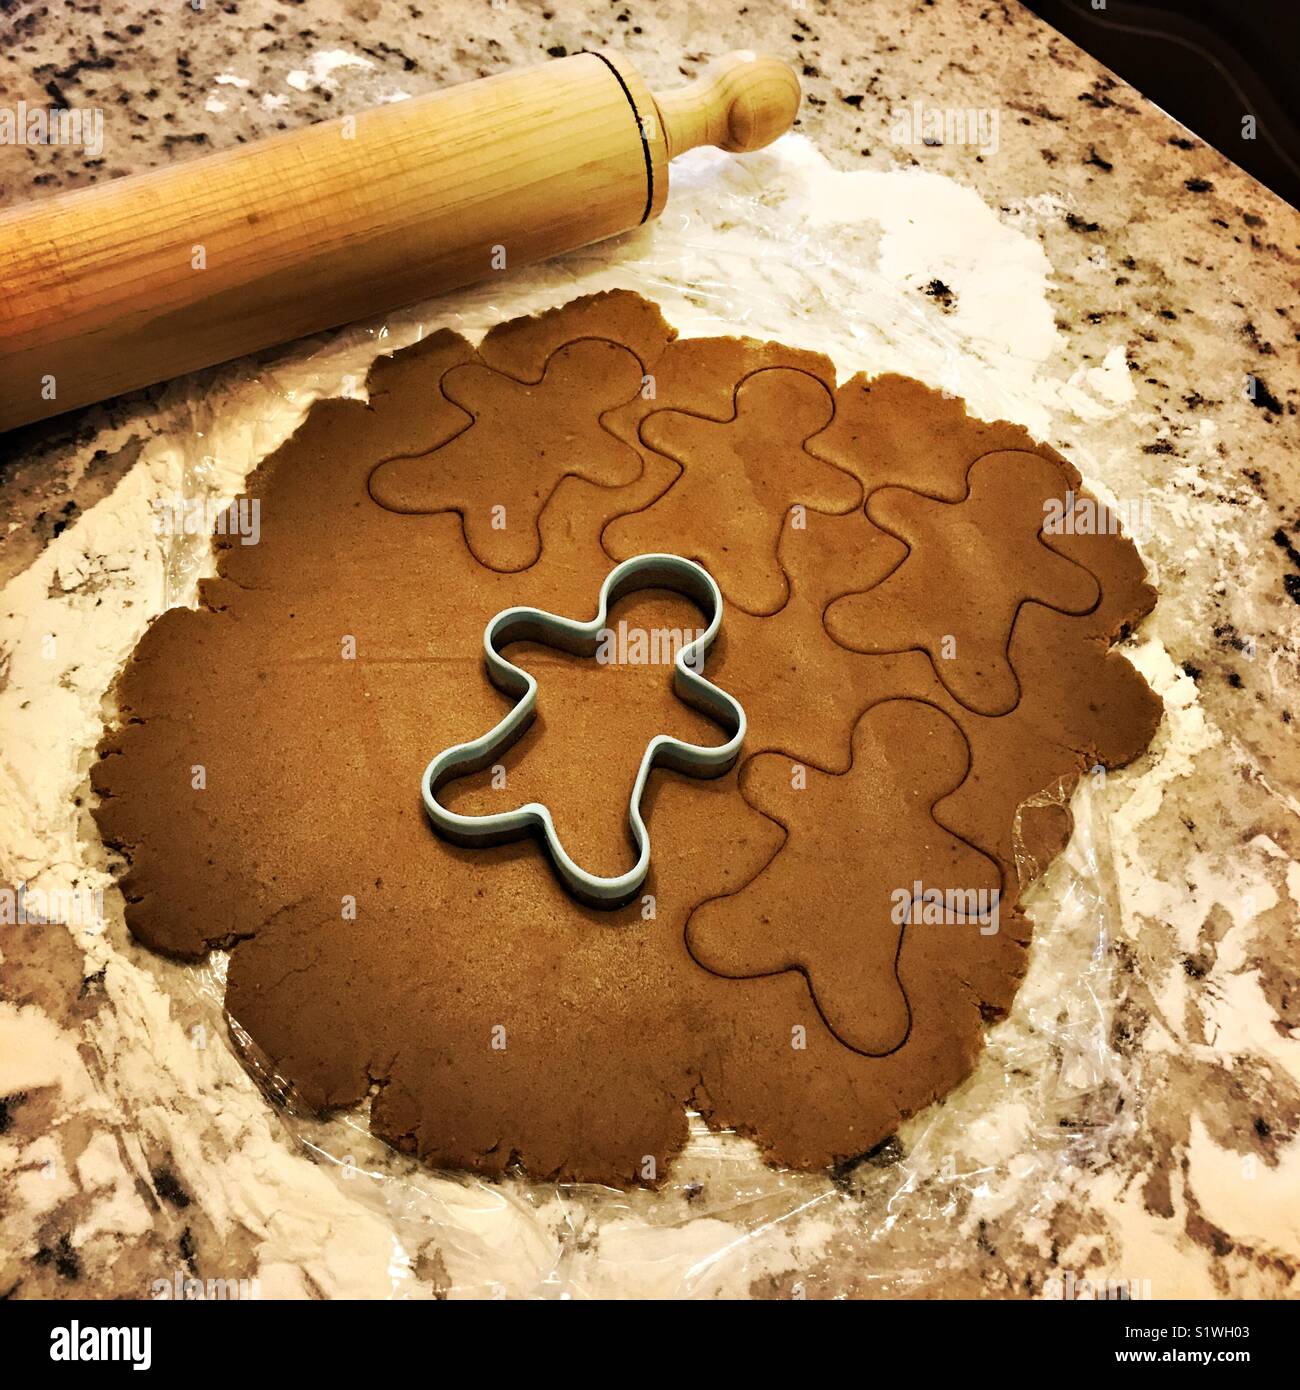 Gingerbread pasta biscotto è laminato su un bancone di marmo con un panpepato cookie cutter in pasta e un matterello accanto all'impasto. Foto Stock